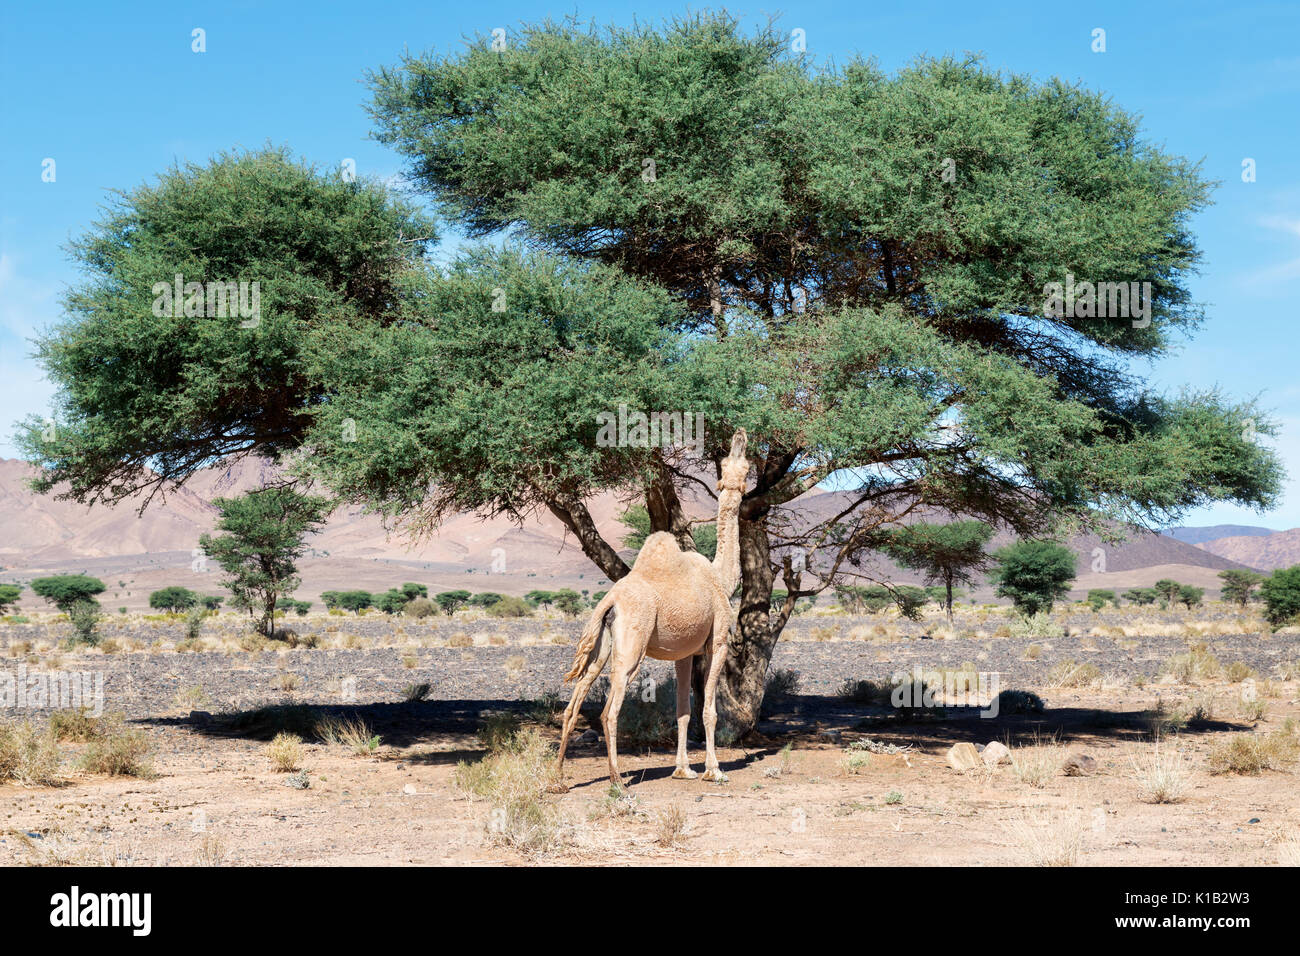 A camel (dromedary) eats from an Acacia tree in the Sahara desert of Morocco. Stock Photo